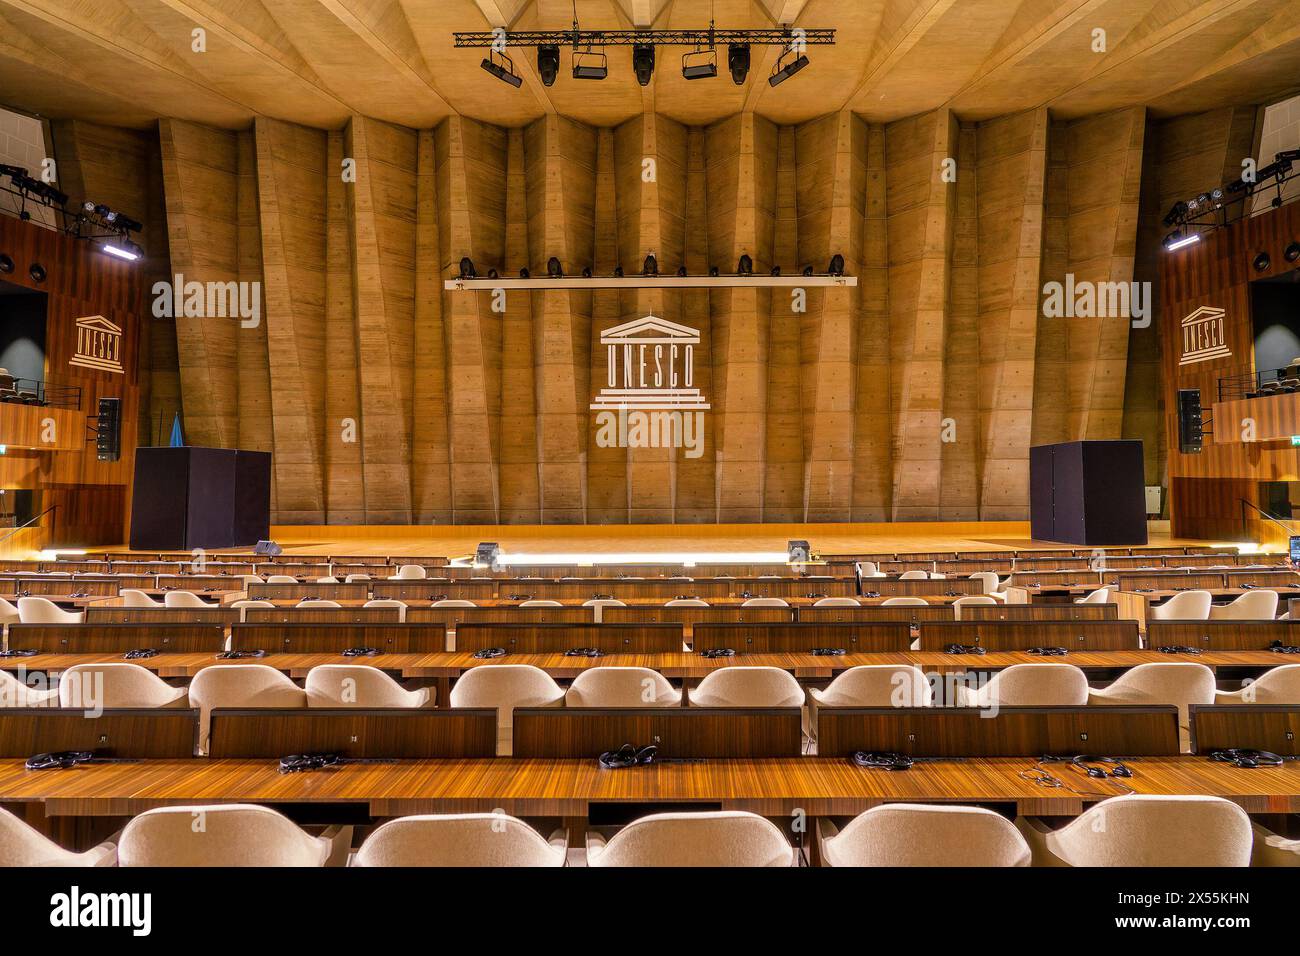 Im Inneren des großen Auditoriums des UNESCO-Hauptquartiers in Paris, Frankreich Stockfoto